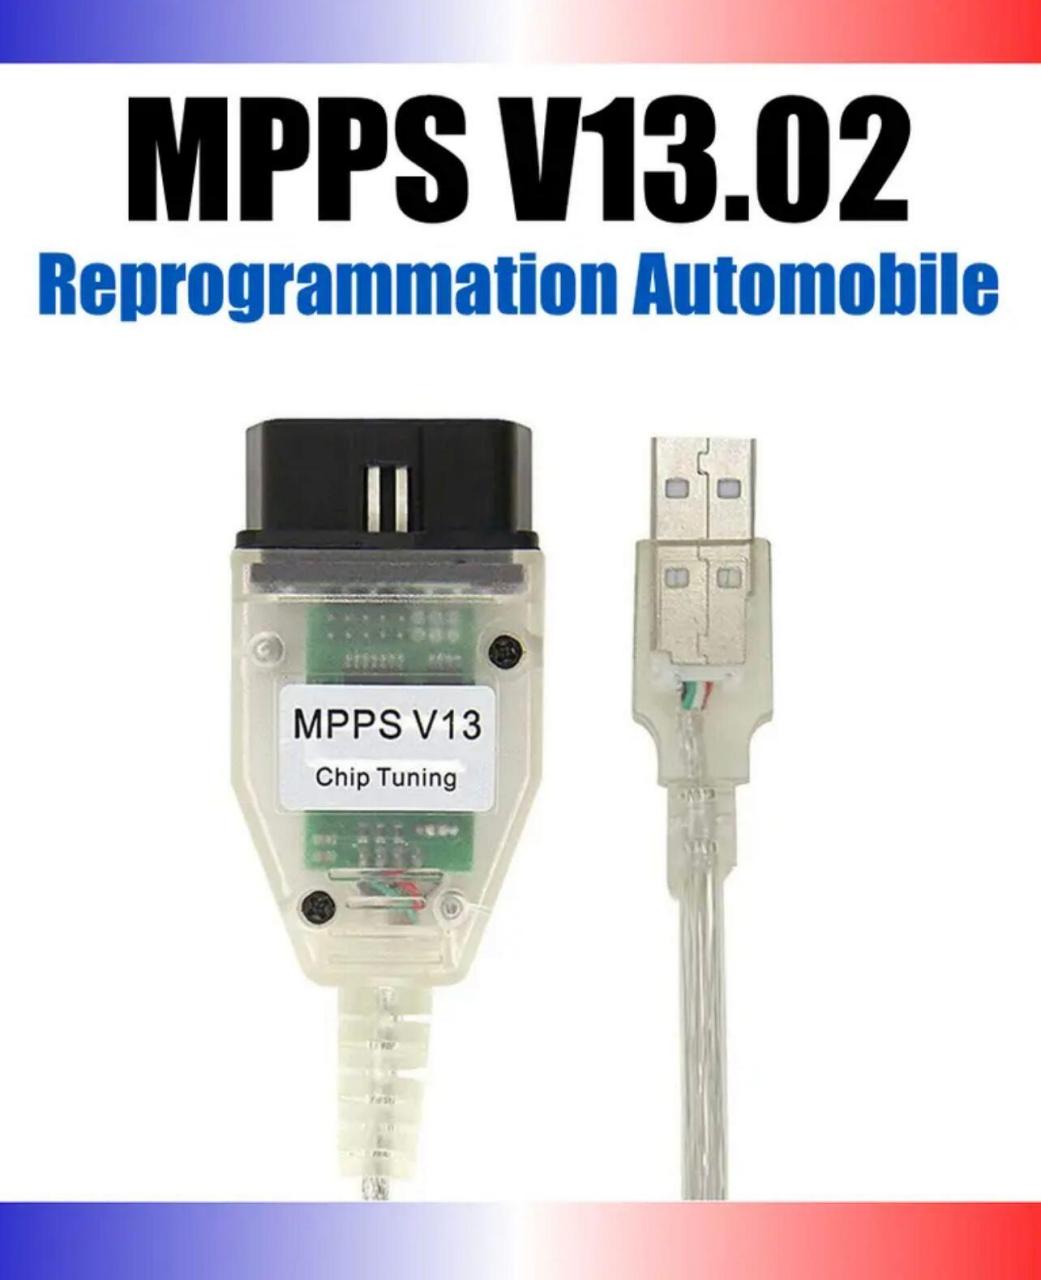 MPPS V13 cable